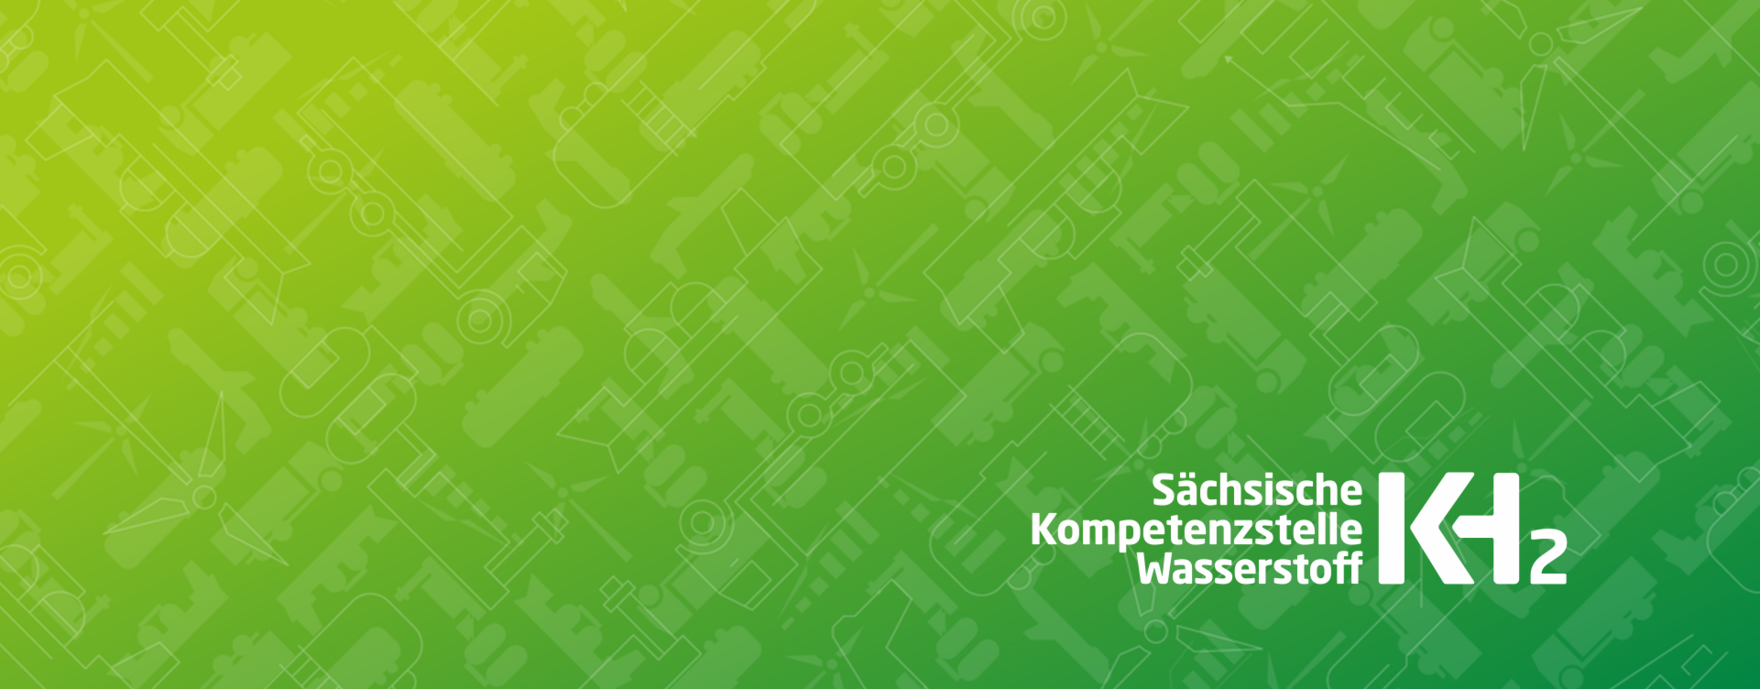 KH2 – Sächsische Kompetenzstelle Wasserstoff. Logo mit Text auf grünem Farbverlauf und Piktogrammen